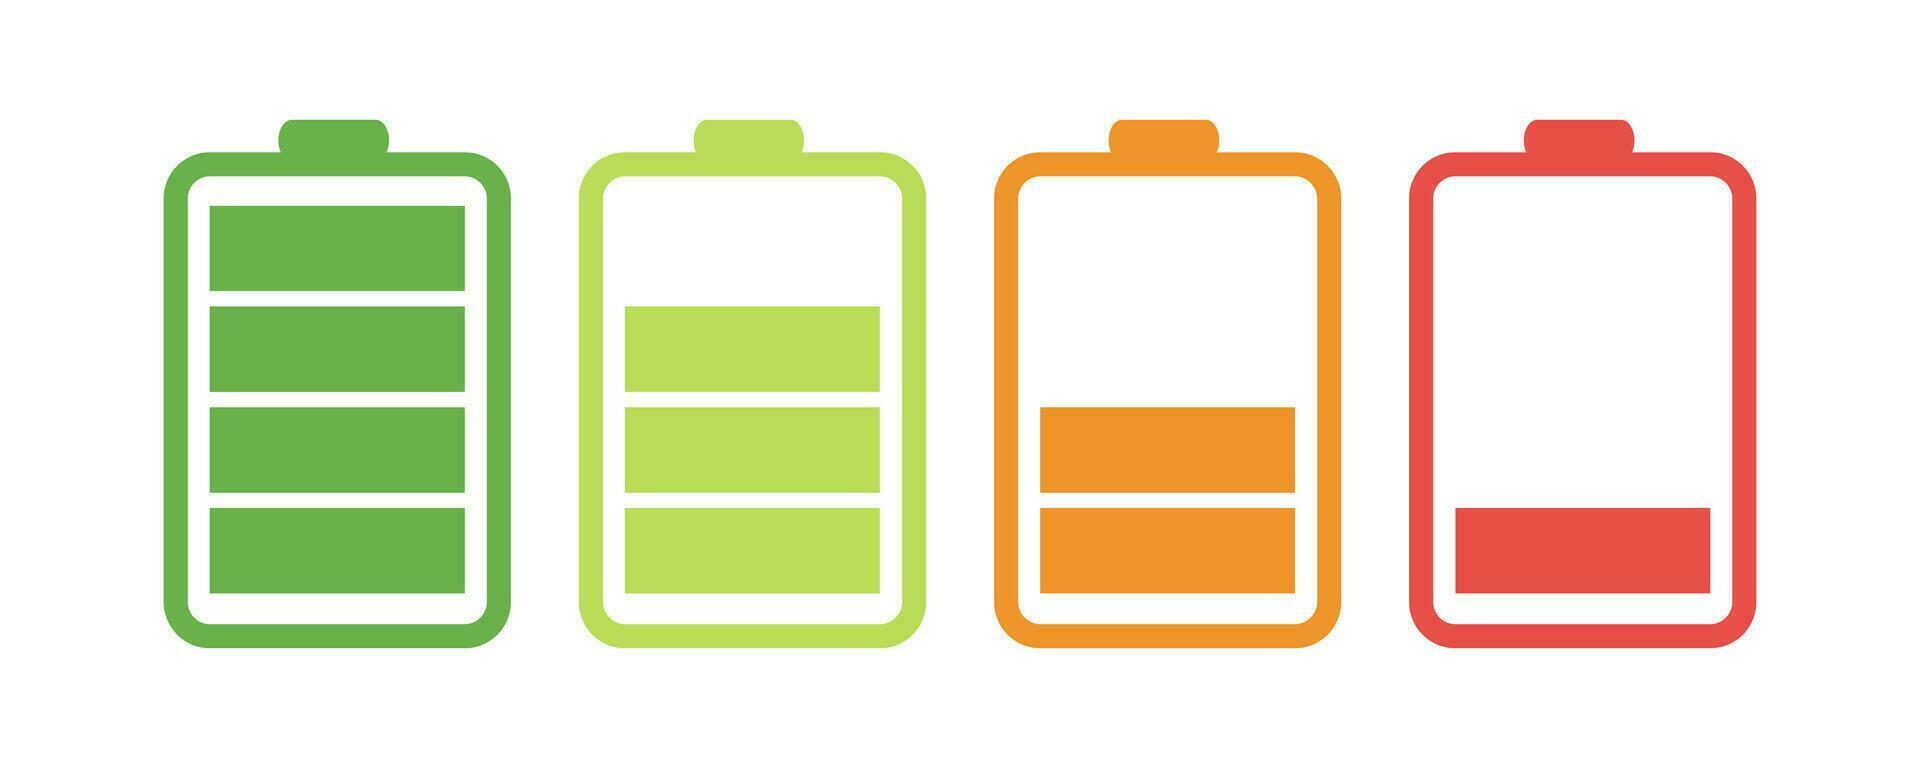 batterie charge niveau indicateur. ensemble de coloré batterie charge indicateurs. vecteur illustration